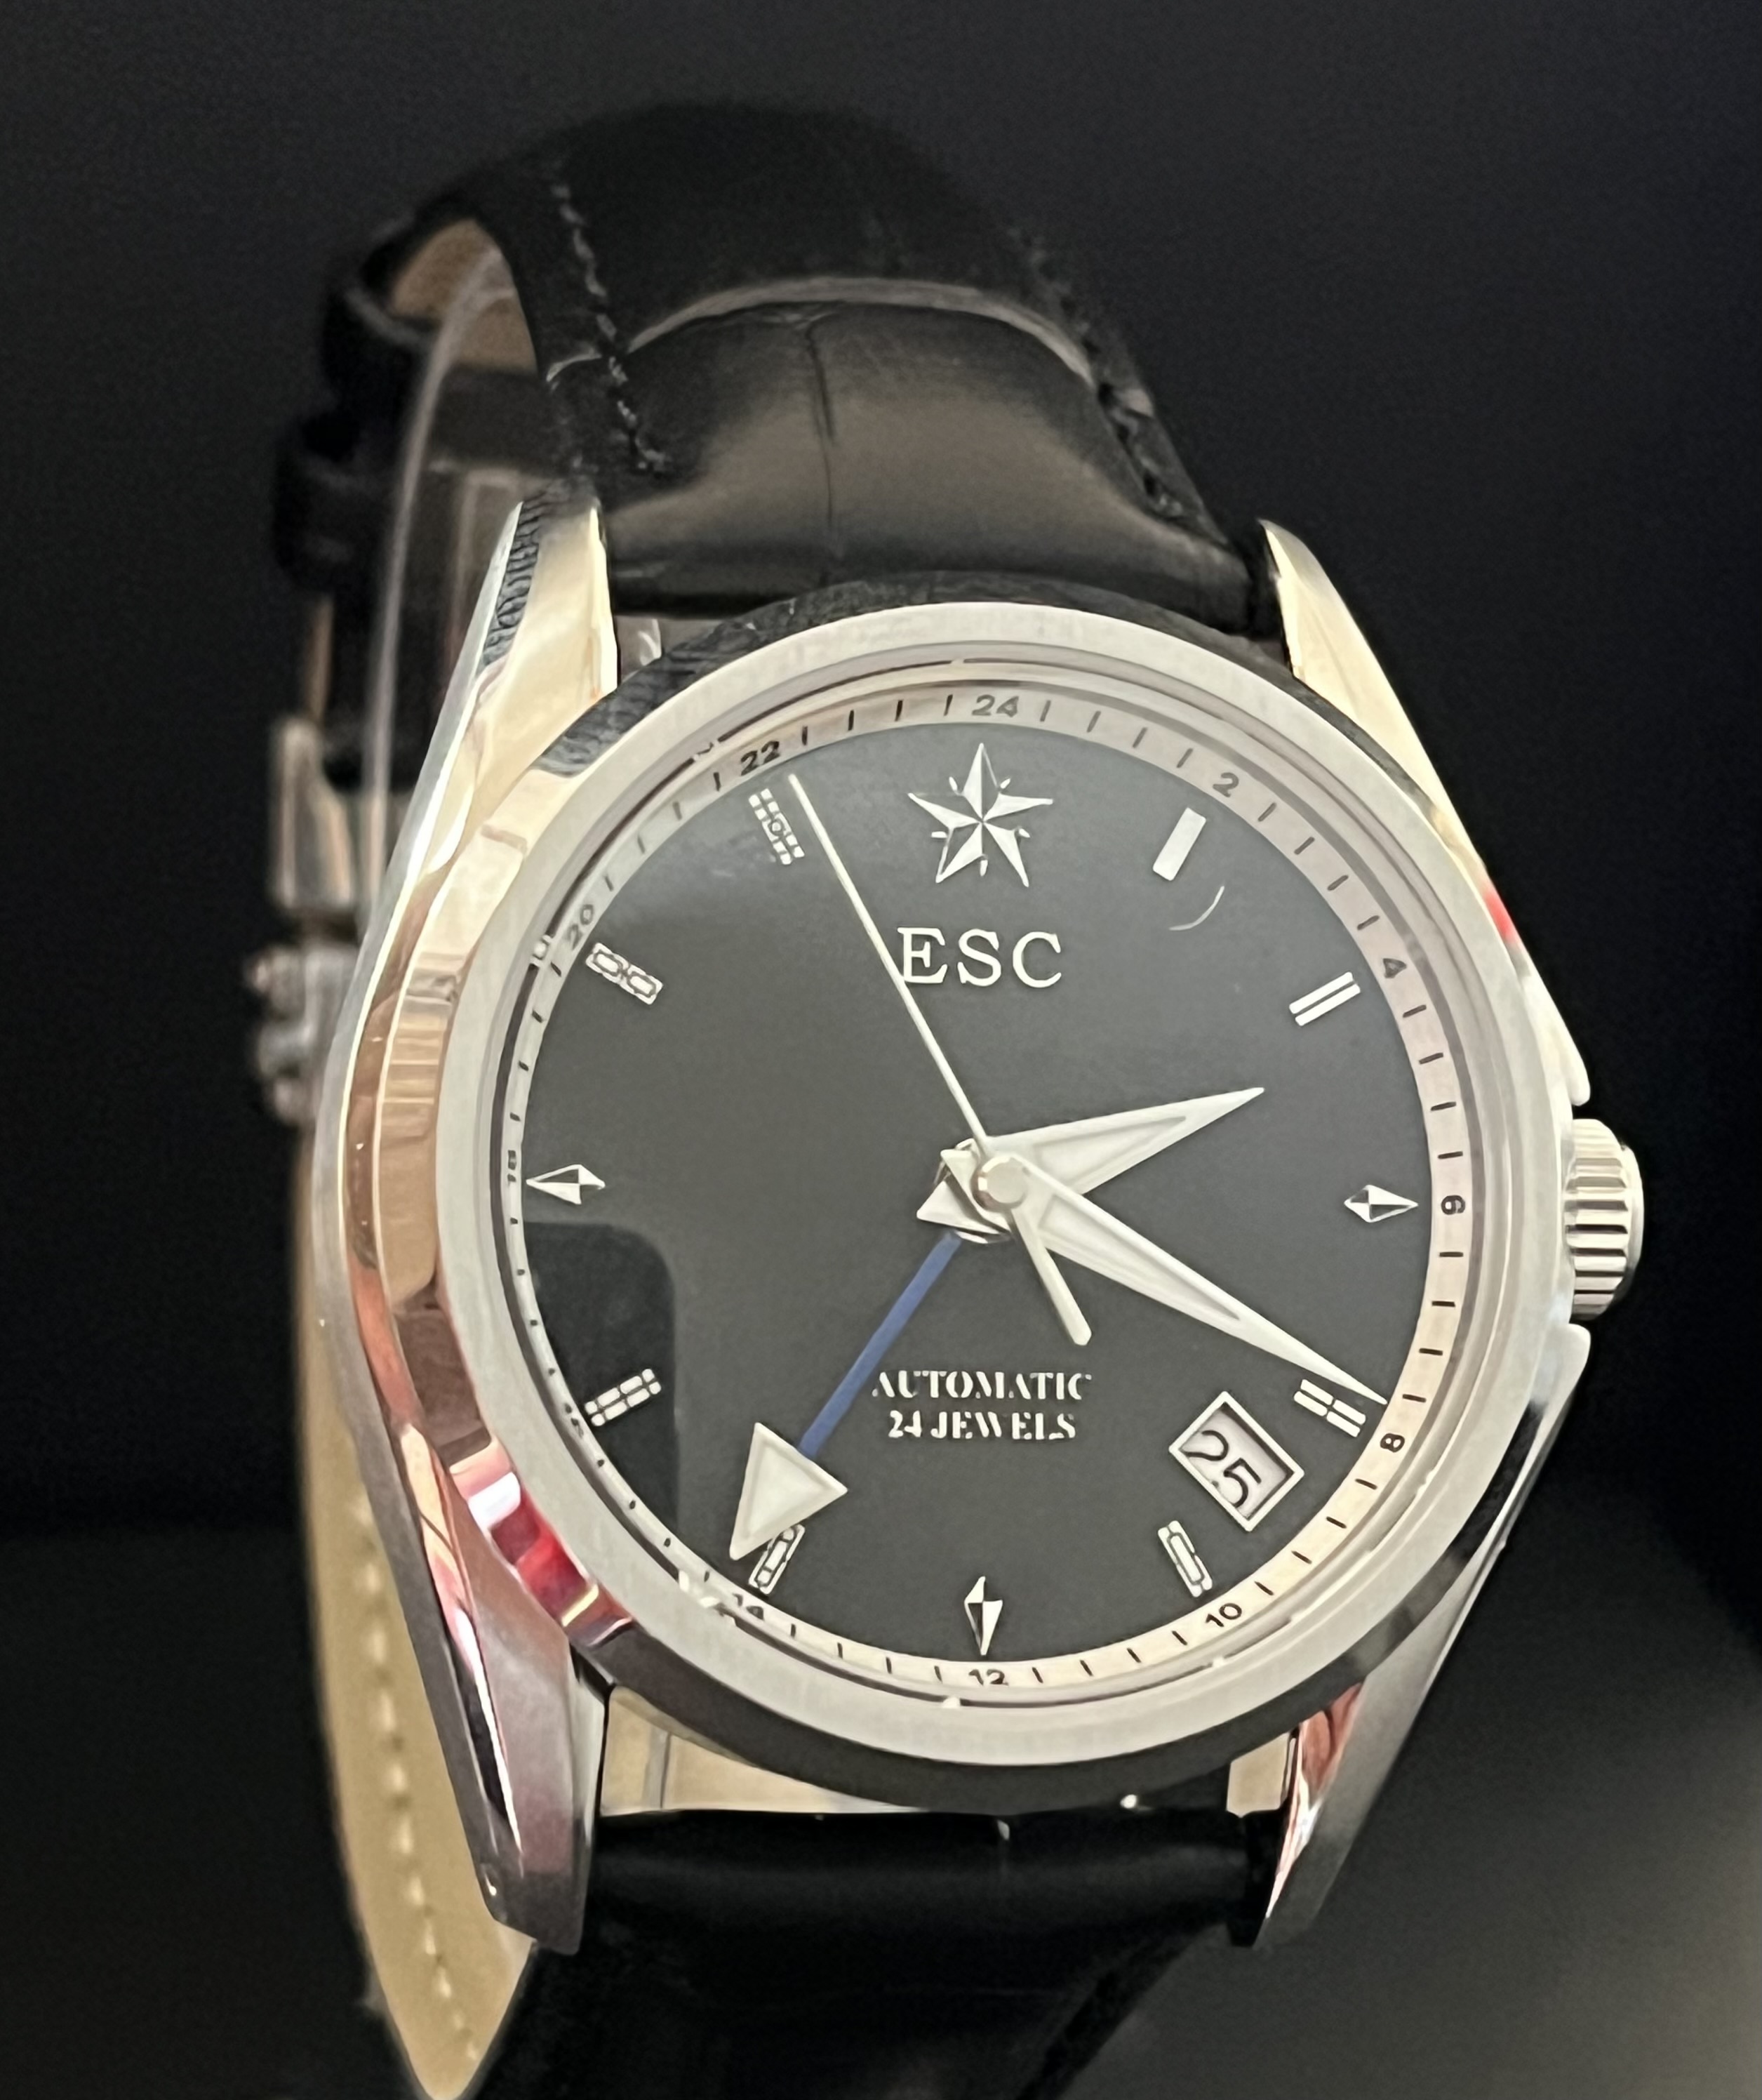 2301. The first luxury GMT diverwatch